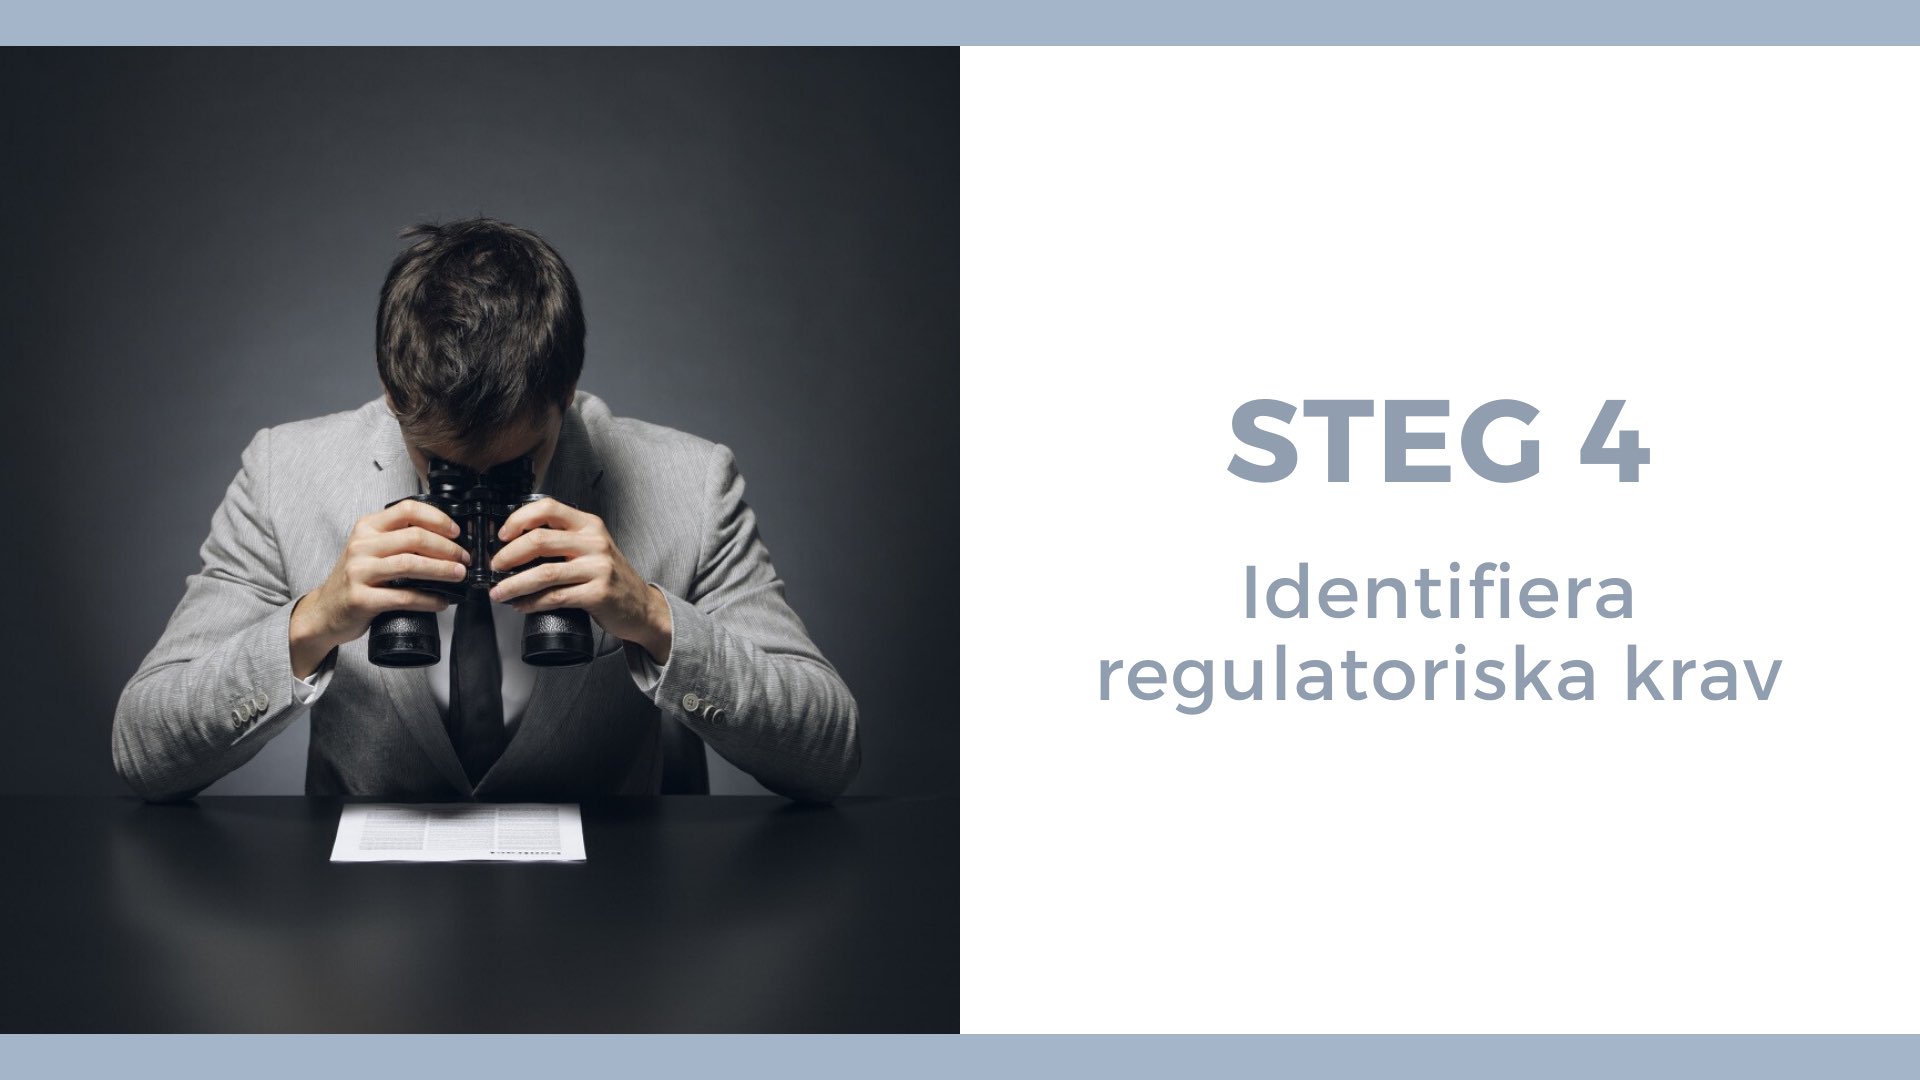 Steg 4 Identifiera regulatoriska krav - Man tittar med kikare på papper